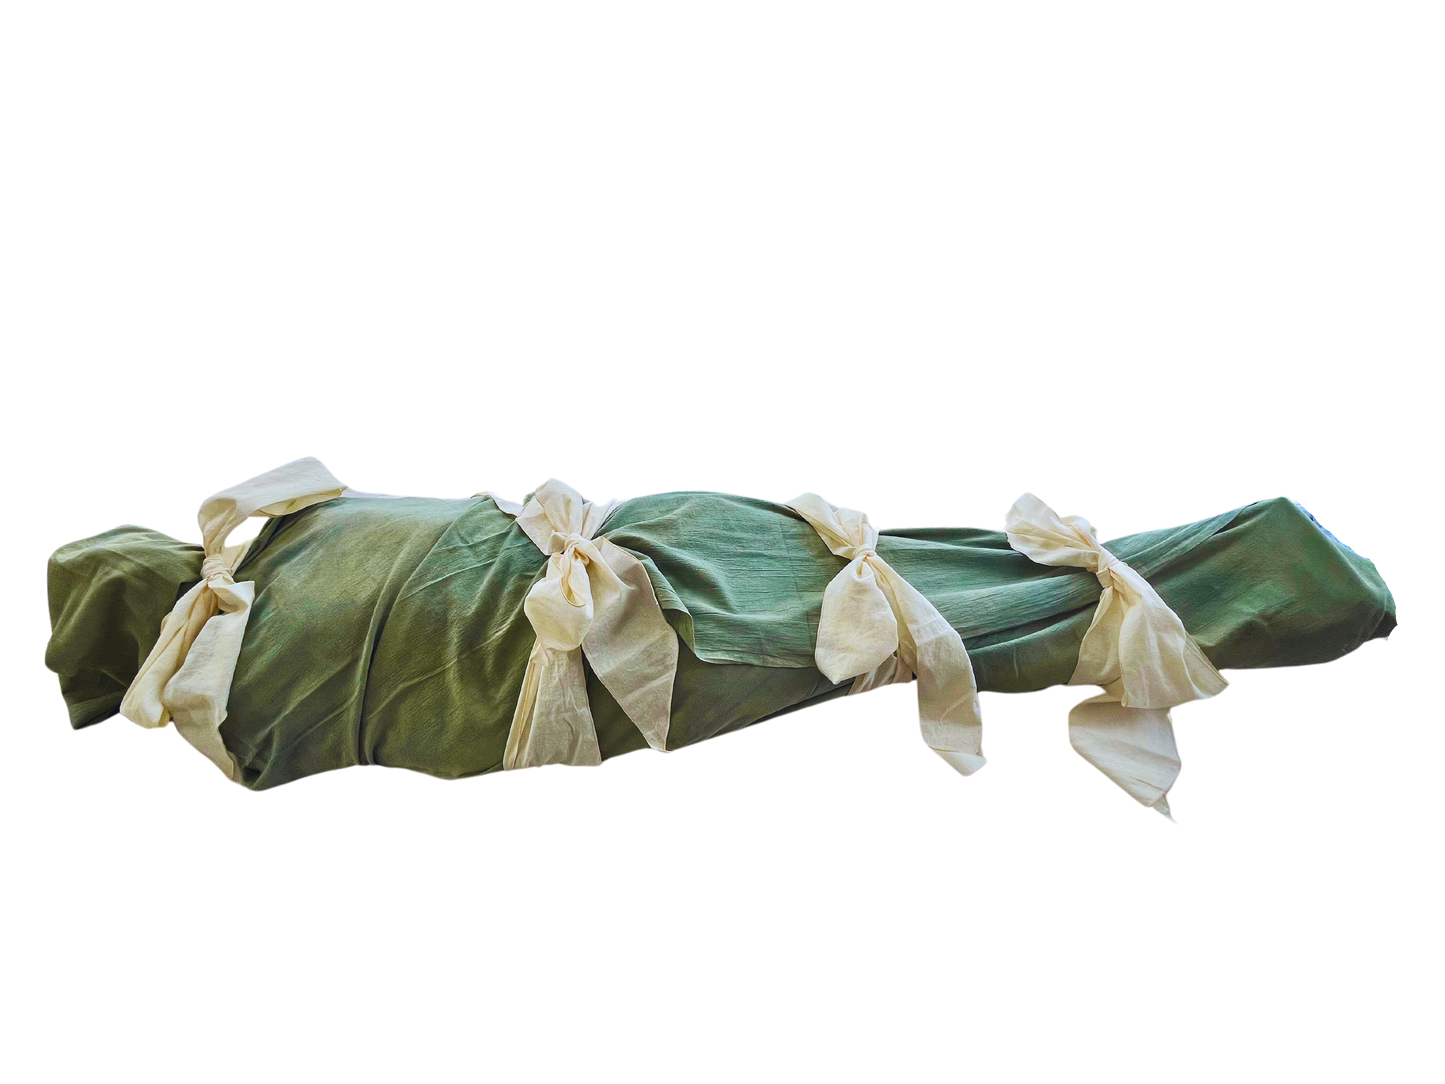 SANCTUM burial shroud (live model)